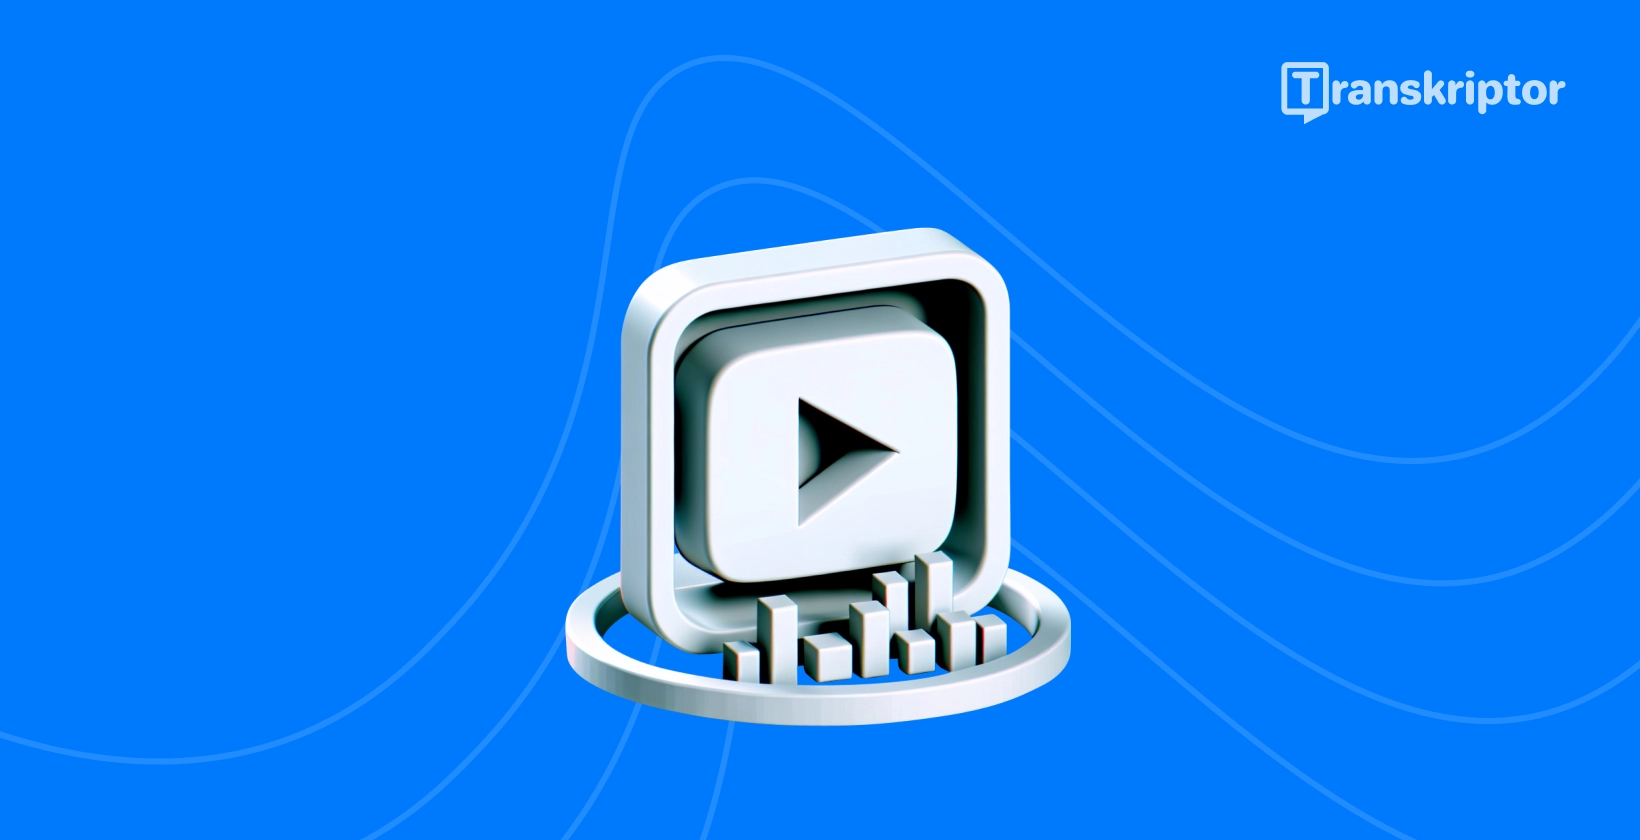 Spela upp knapp och transkription visuellt illustrera metoder för att transkribera YouTube -videor effektivt.